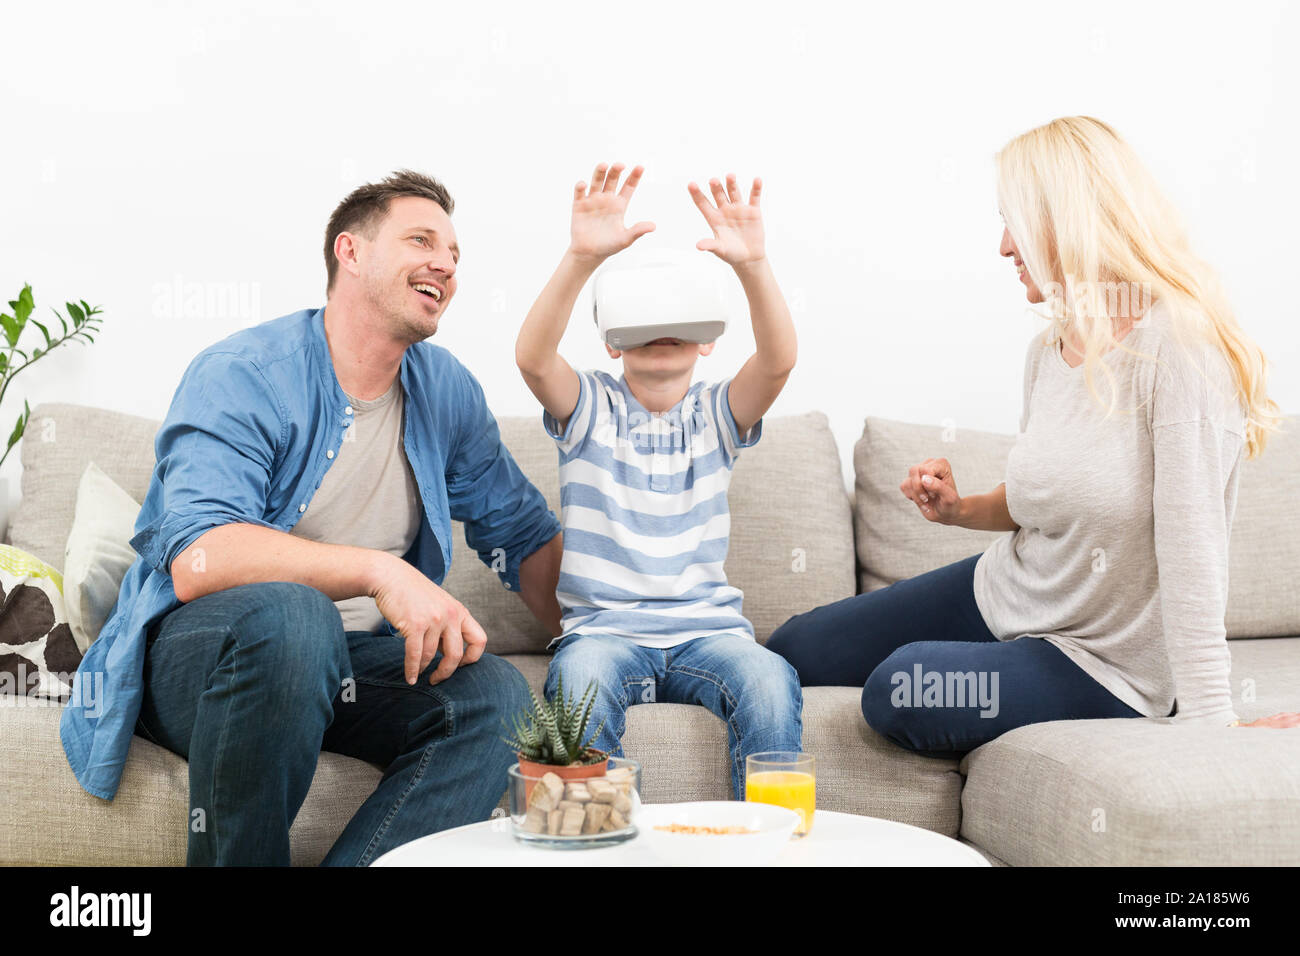 Famille heureuse à la maison sur salon canapé ayant l'amusement jouer des jeux à l'aide de casque de réalité virtuelle Banque D'Images